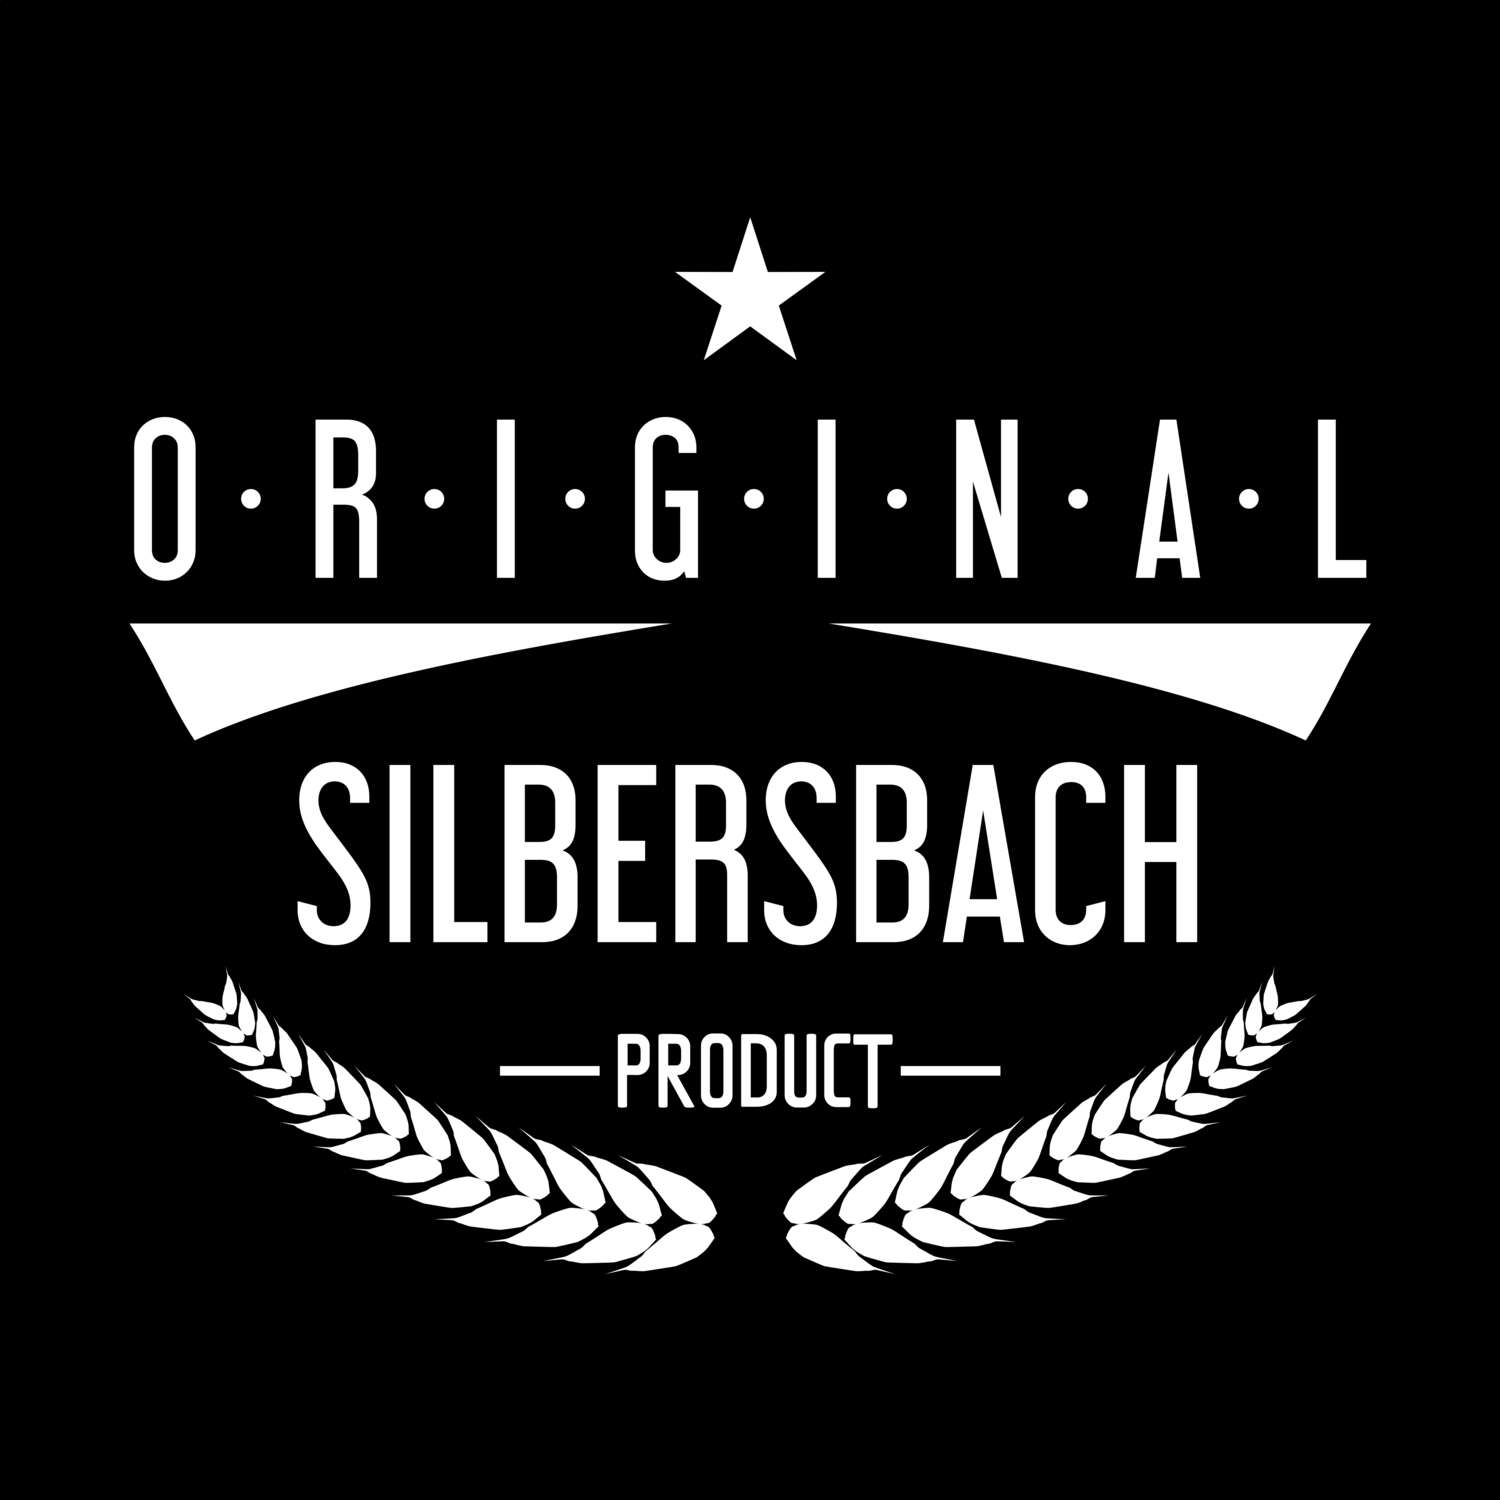 Silbersbach T-Shirt »Original Product«